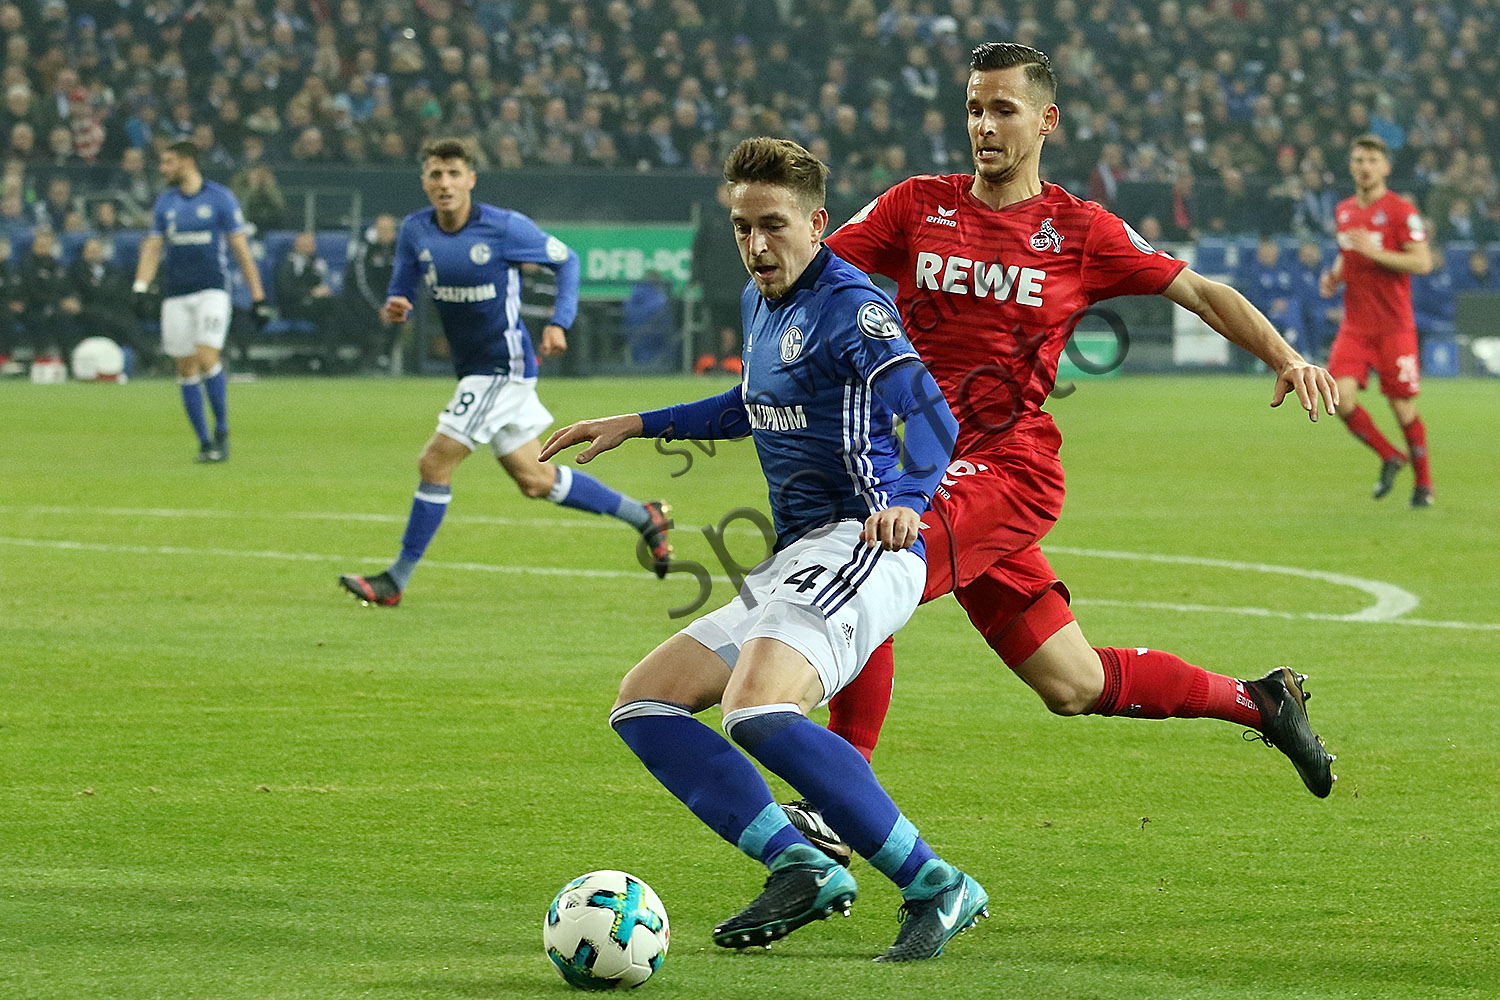 DFB Pokal - 17/18 - FC Schalke 04 vs. 1. FC Köln